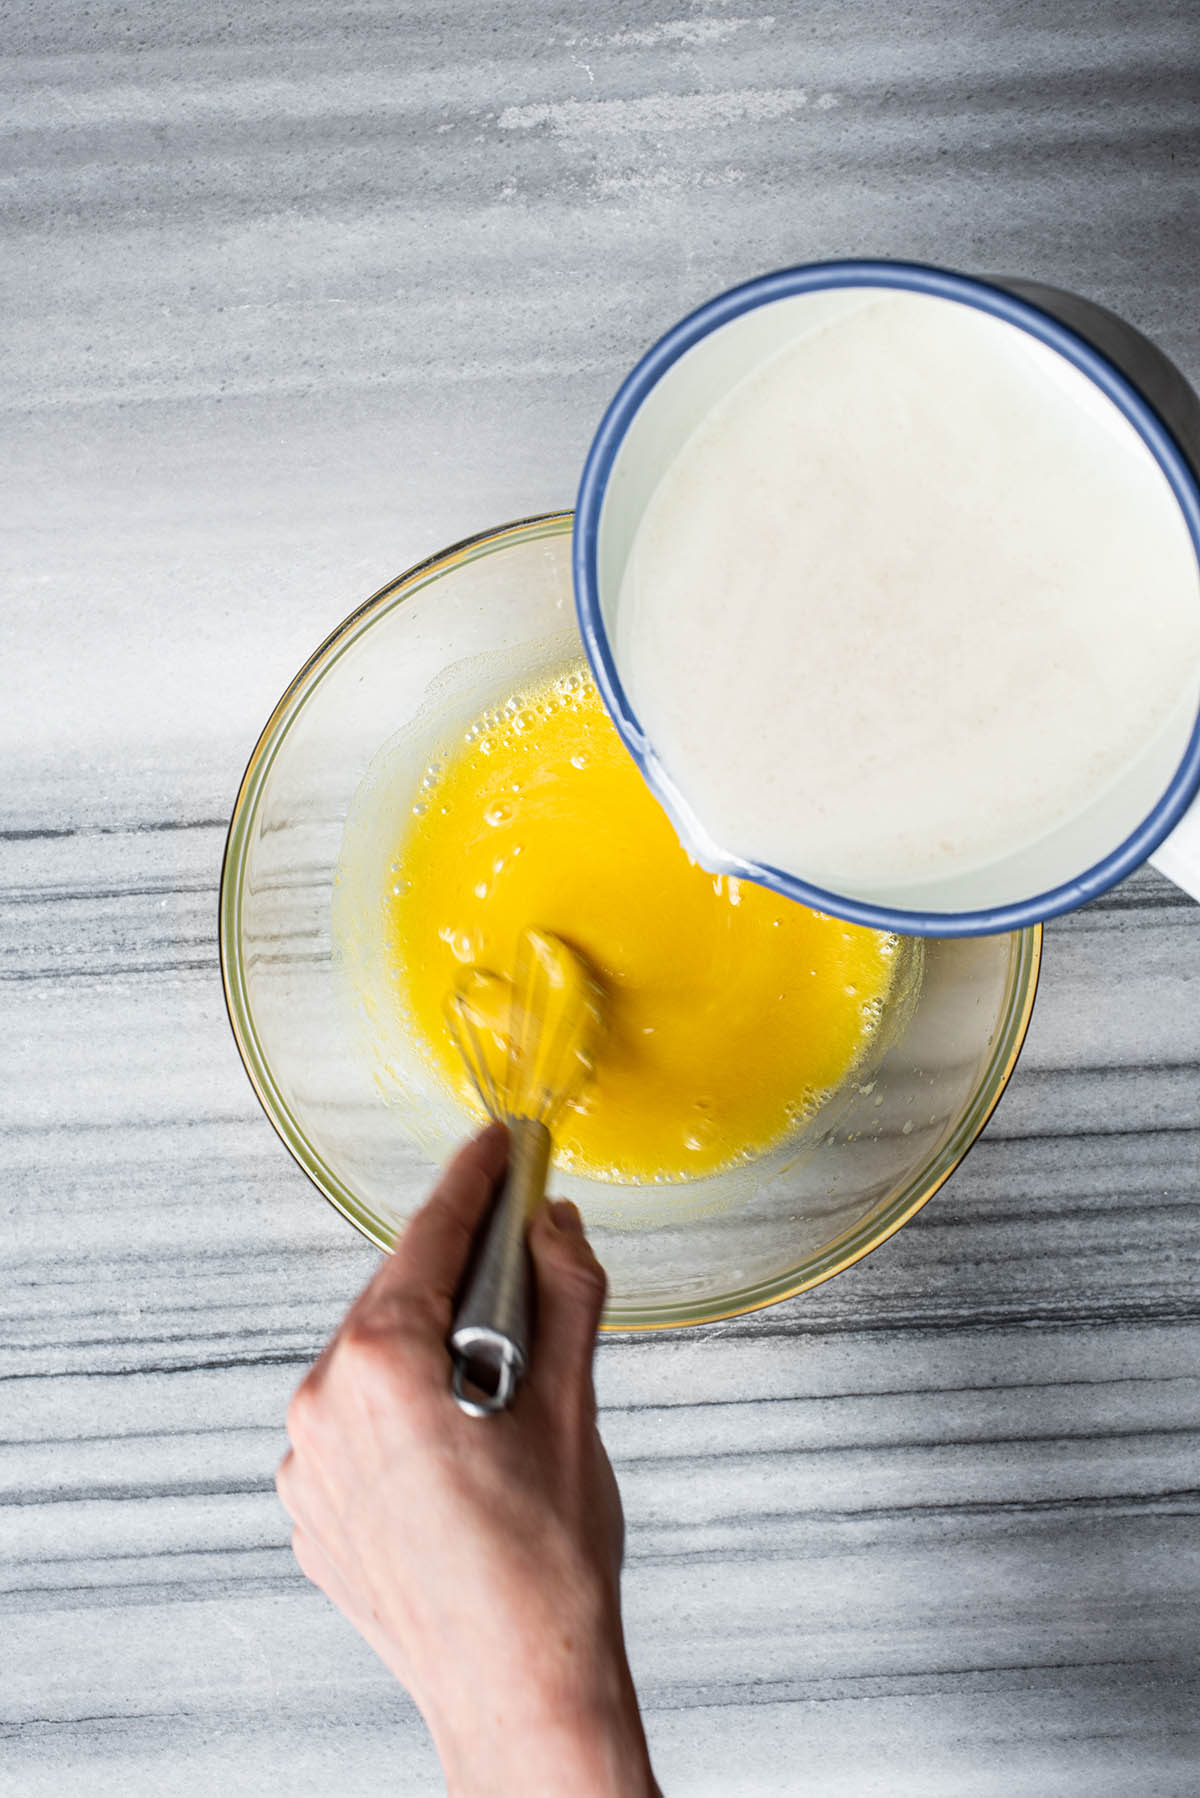 Adding hot milk to egg yolks.